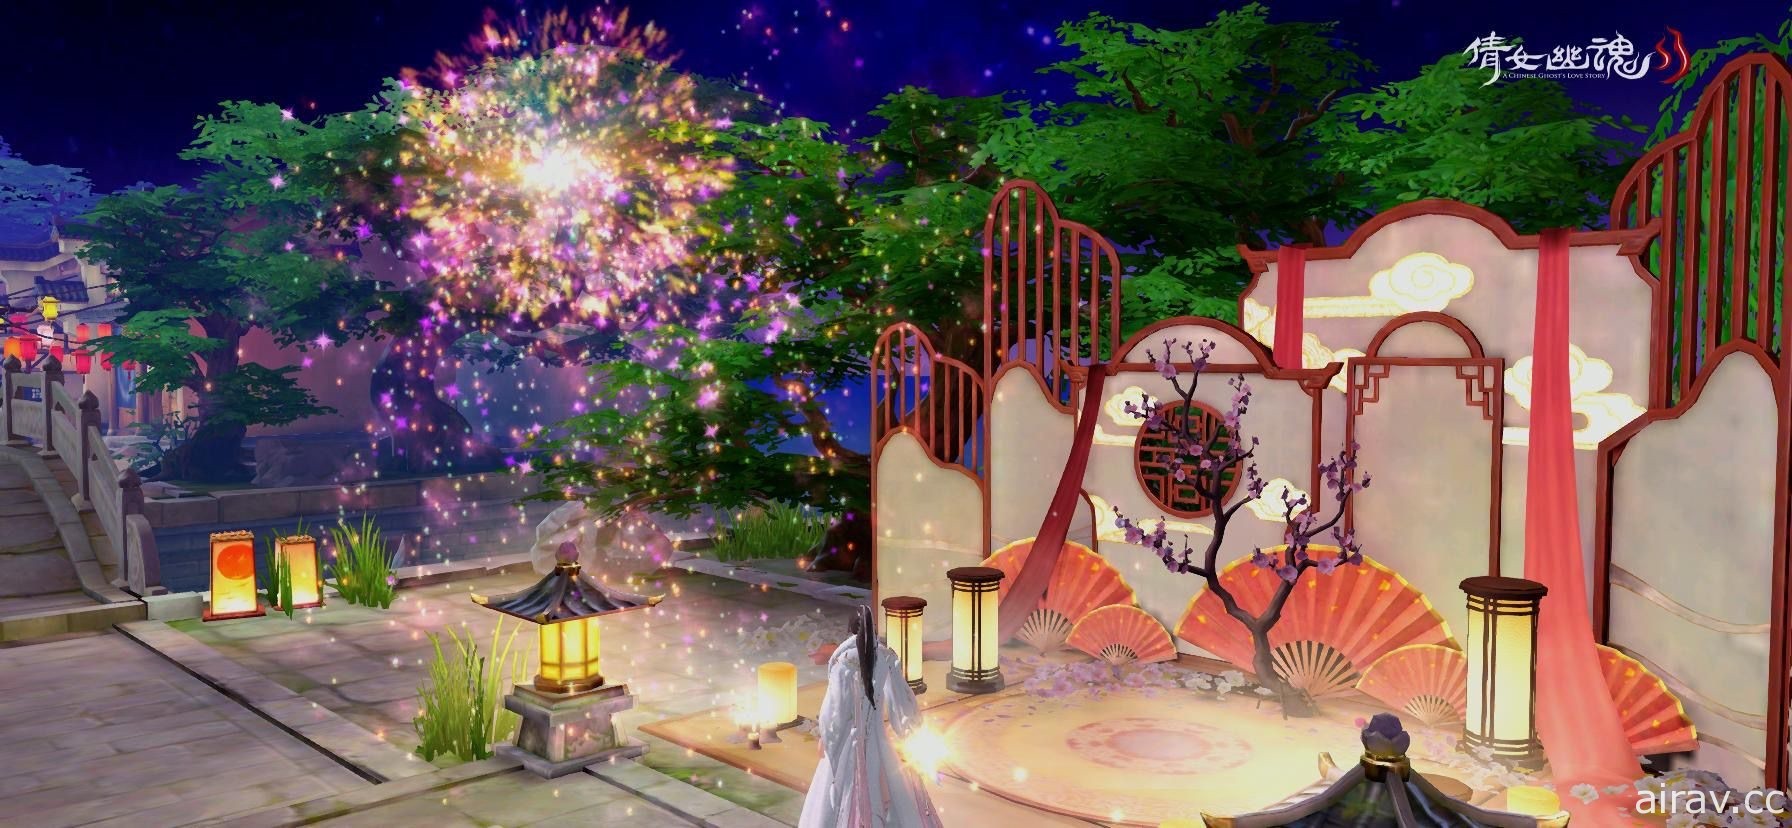 《倩女幽魂 II》火树银花迎新年 释出春节活动介绍